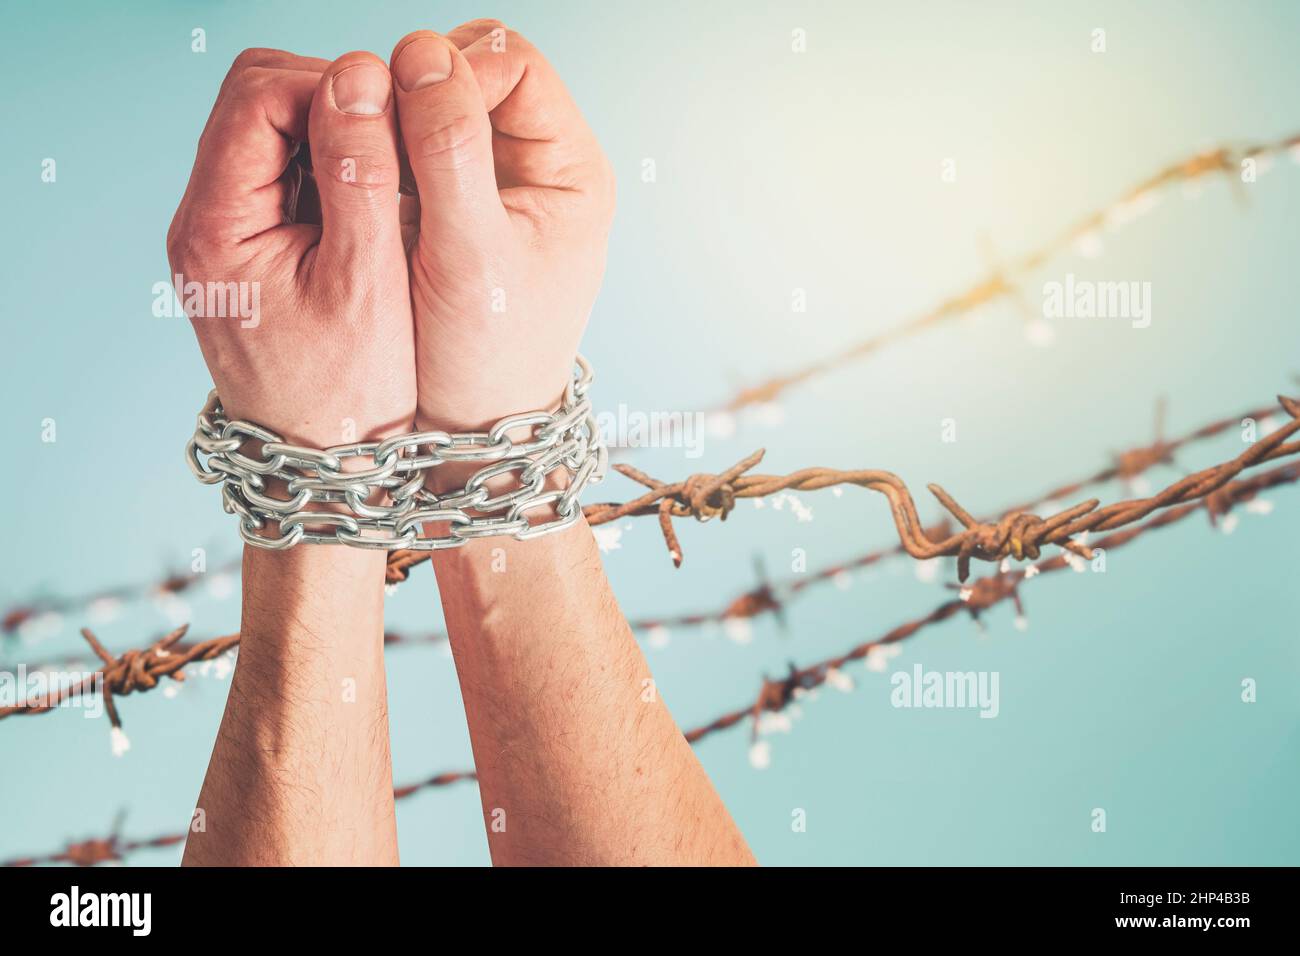 Les mains attachées avec une chaîne métallique soulevée contre la clôture en fil barbelé.Emprisonnement, esclavage, droits de l'homme, liberté. Banque D'Images